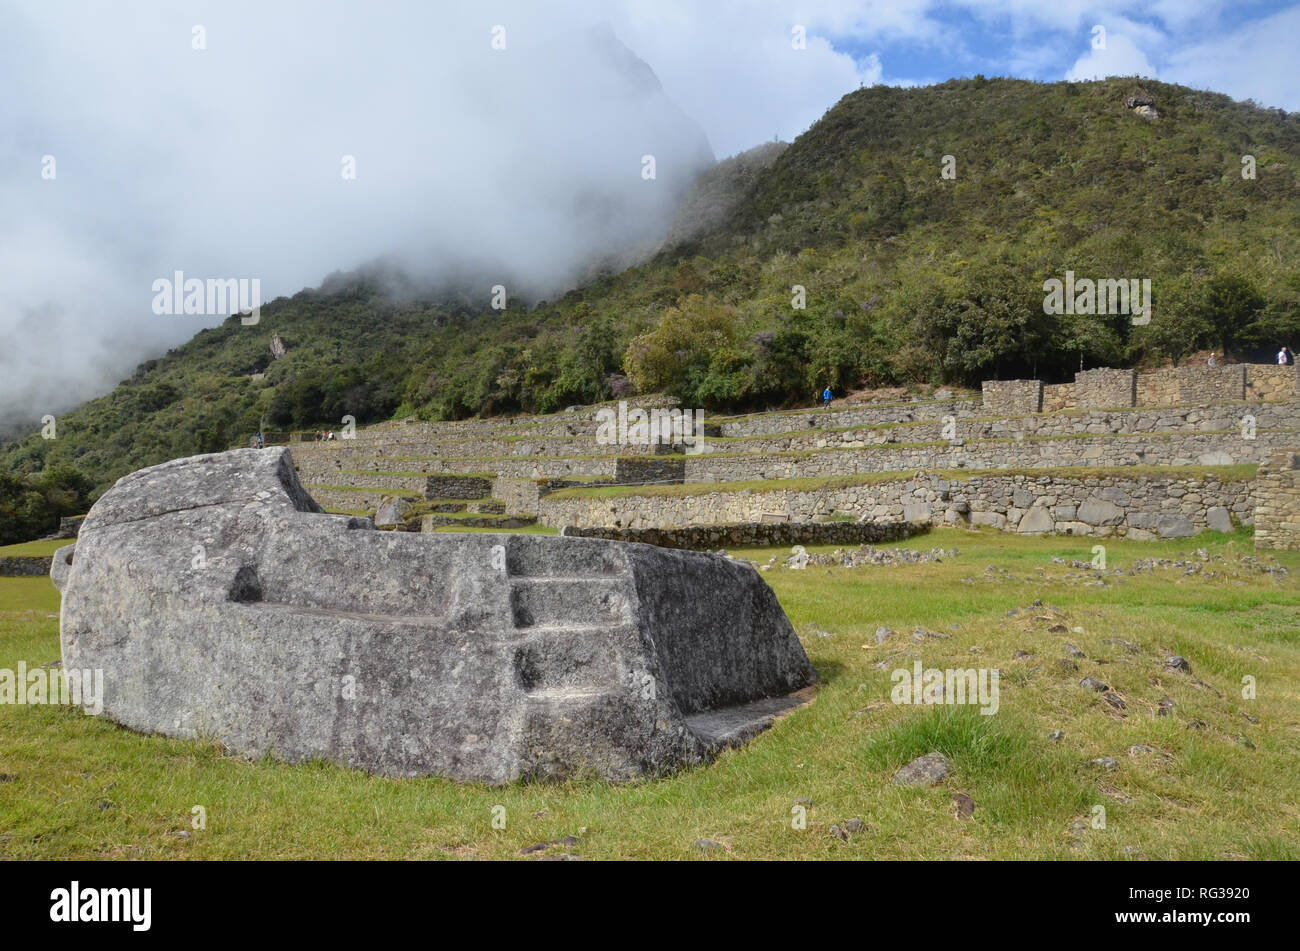 MACHU PICCHU / PERU, August 16, 2018: Visitors overlook the ceremonial rock at Machu Picchu Stock Photo